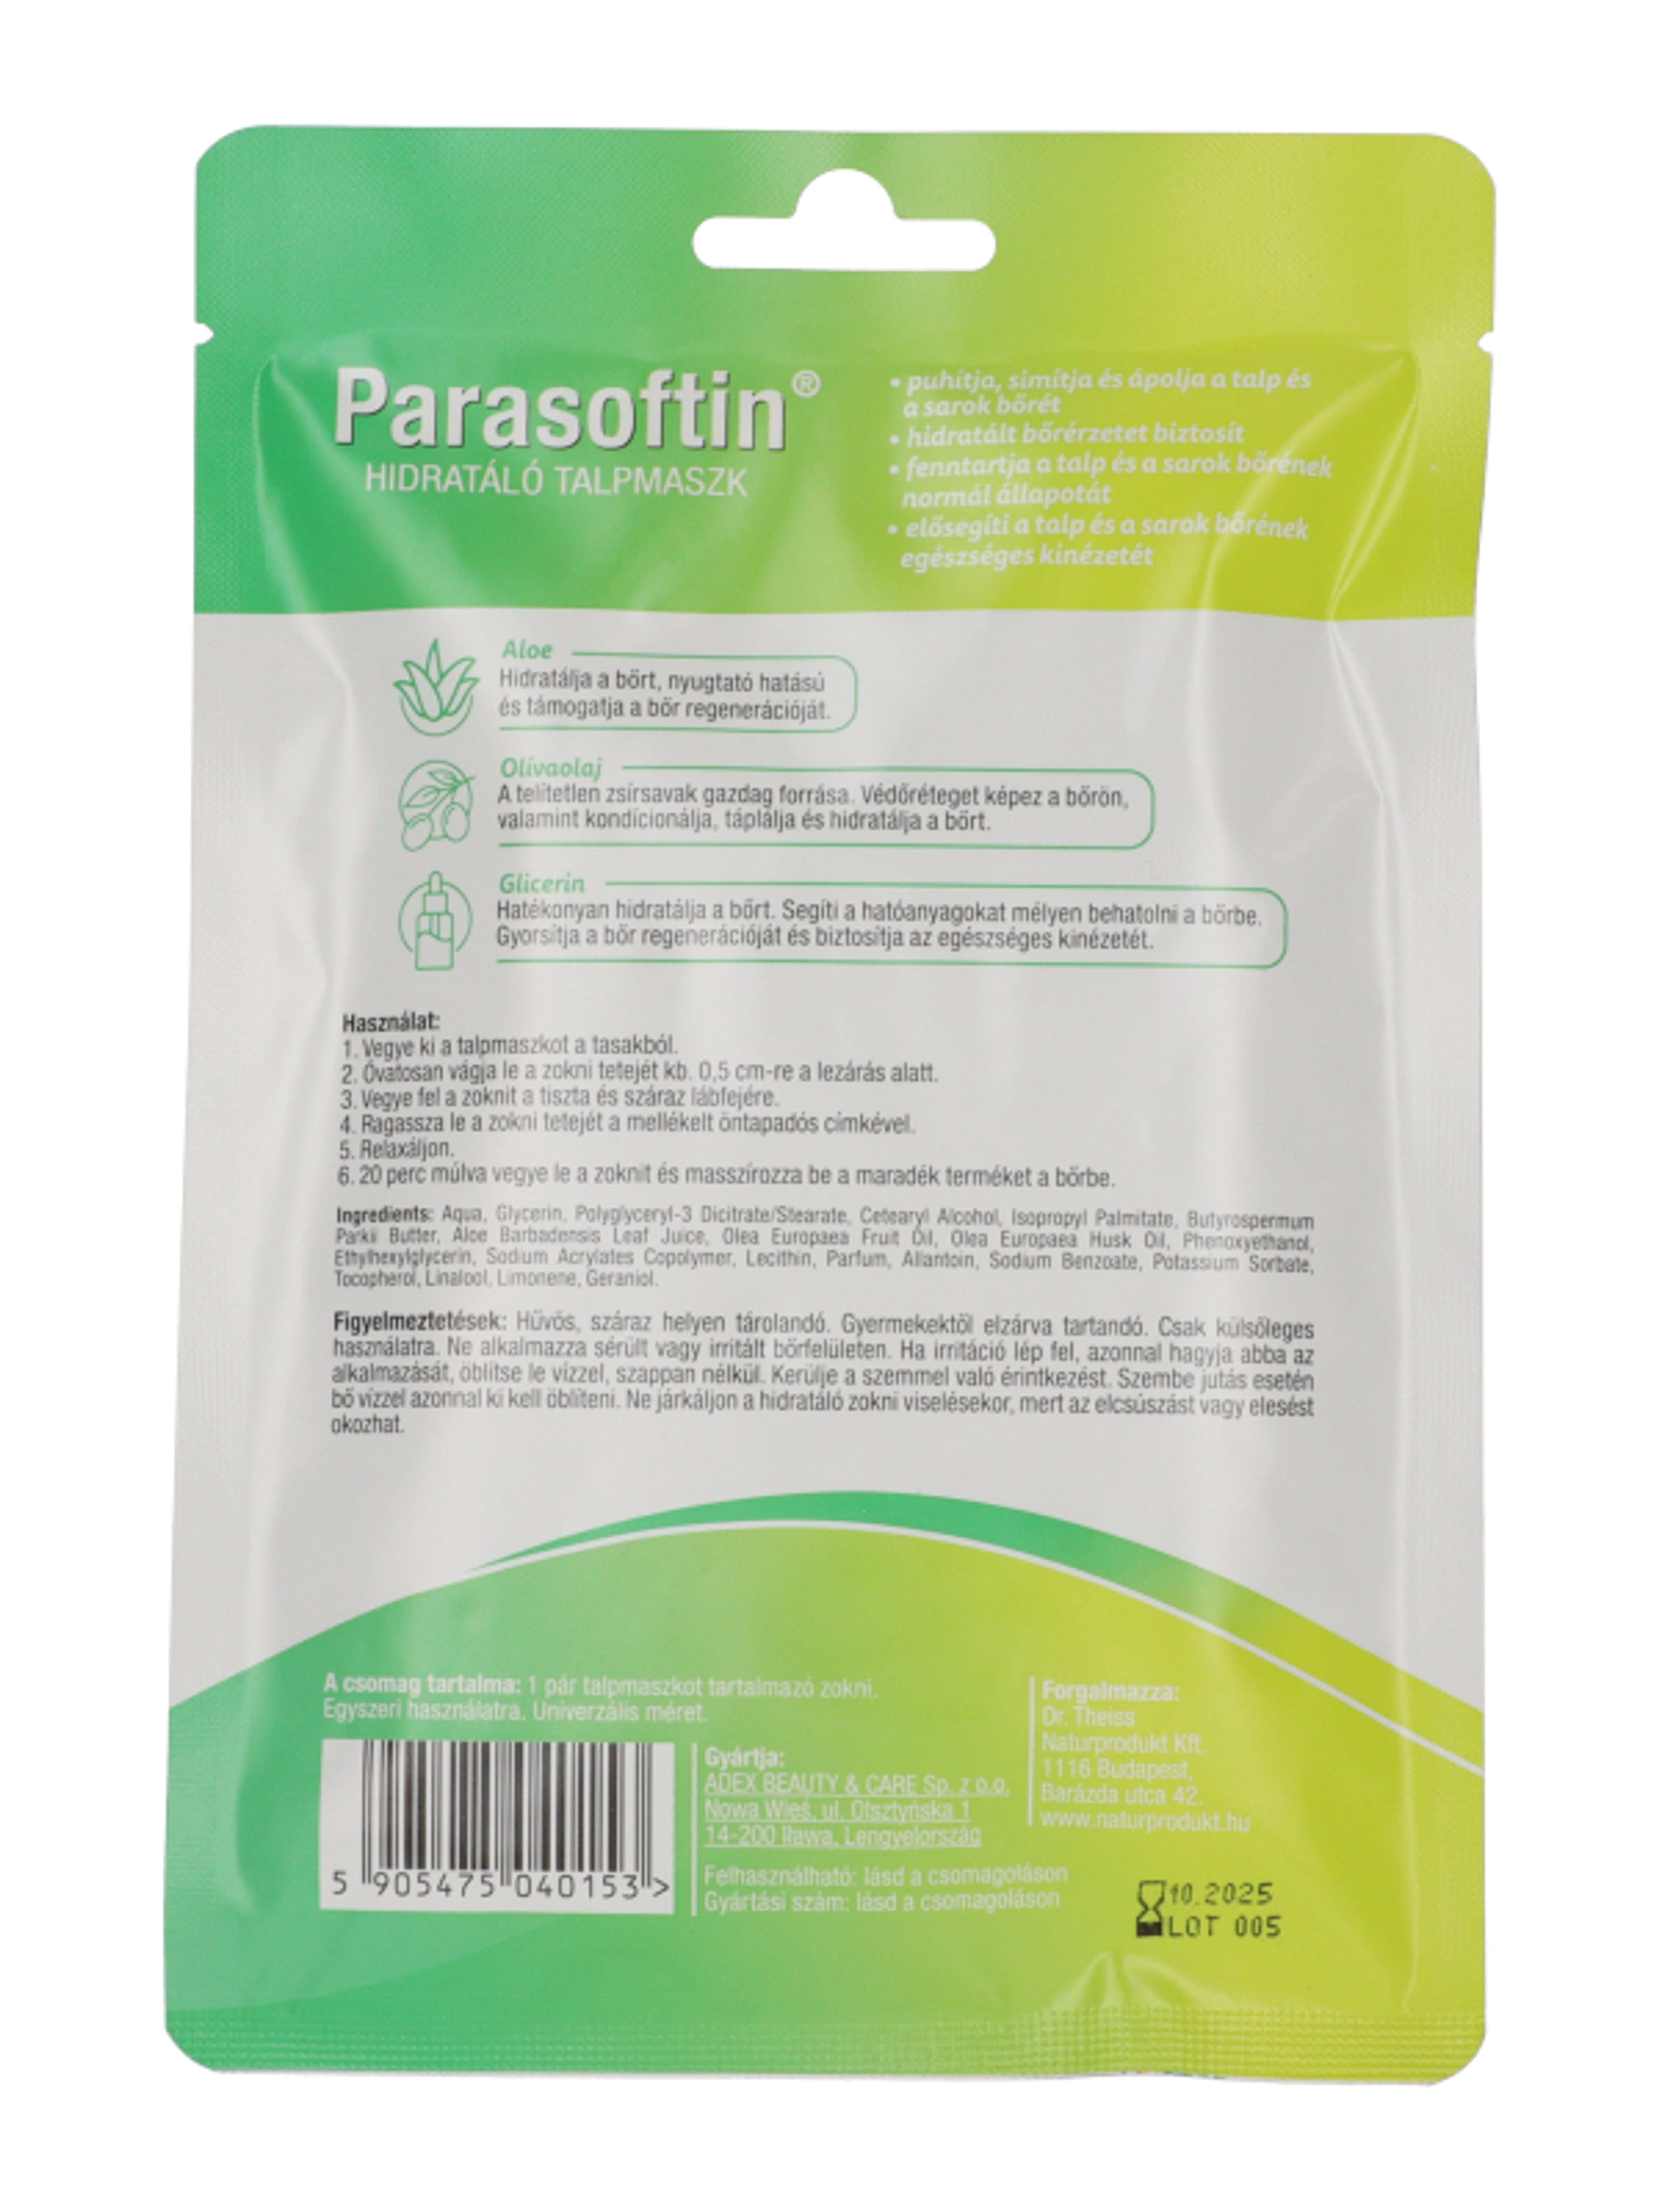 Parasofin hidratáló taplmaszk 1 pár - 1 db-6